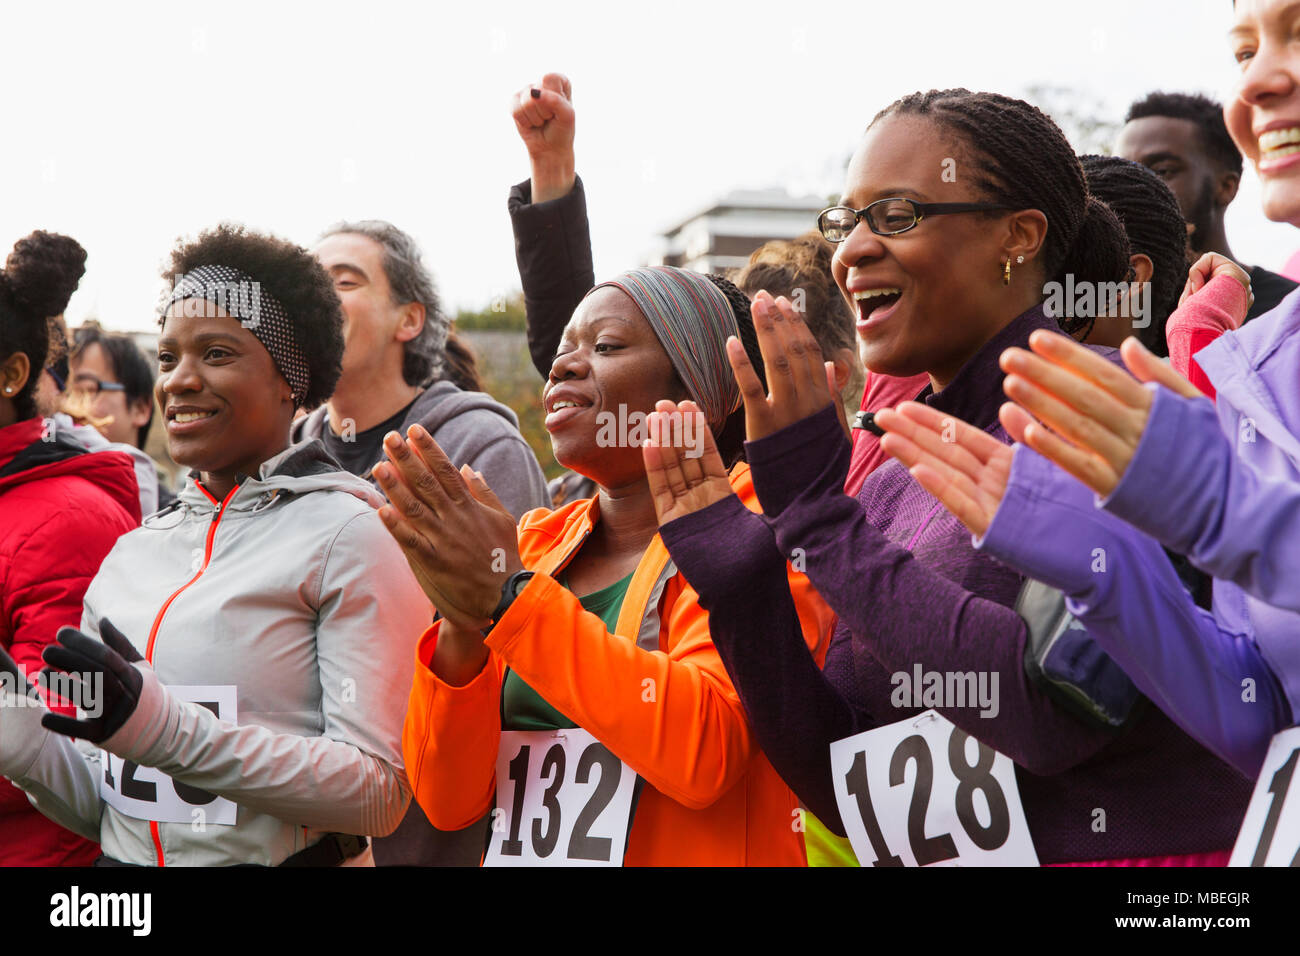 Marathon runners clapping, cheering Stock Photo